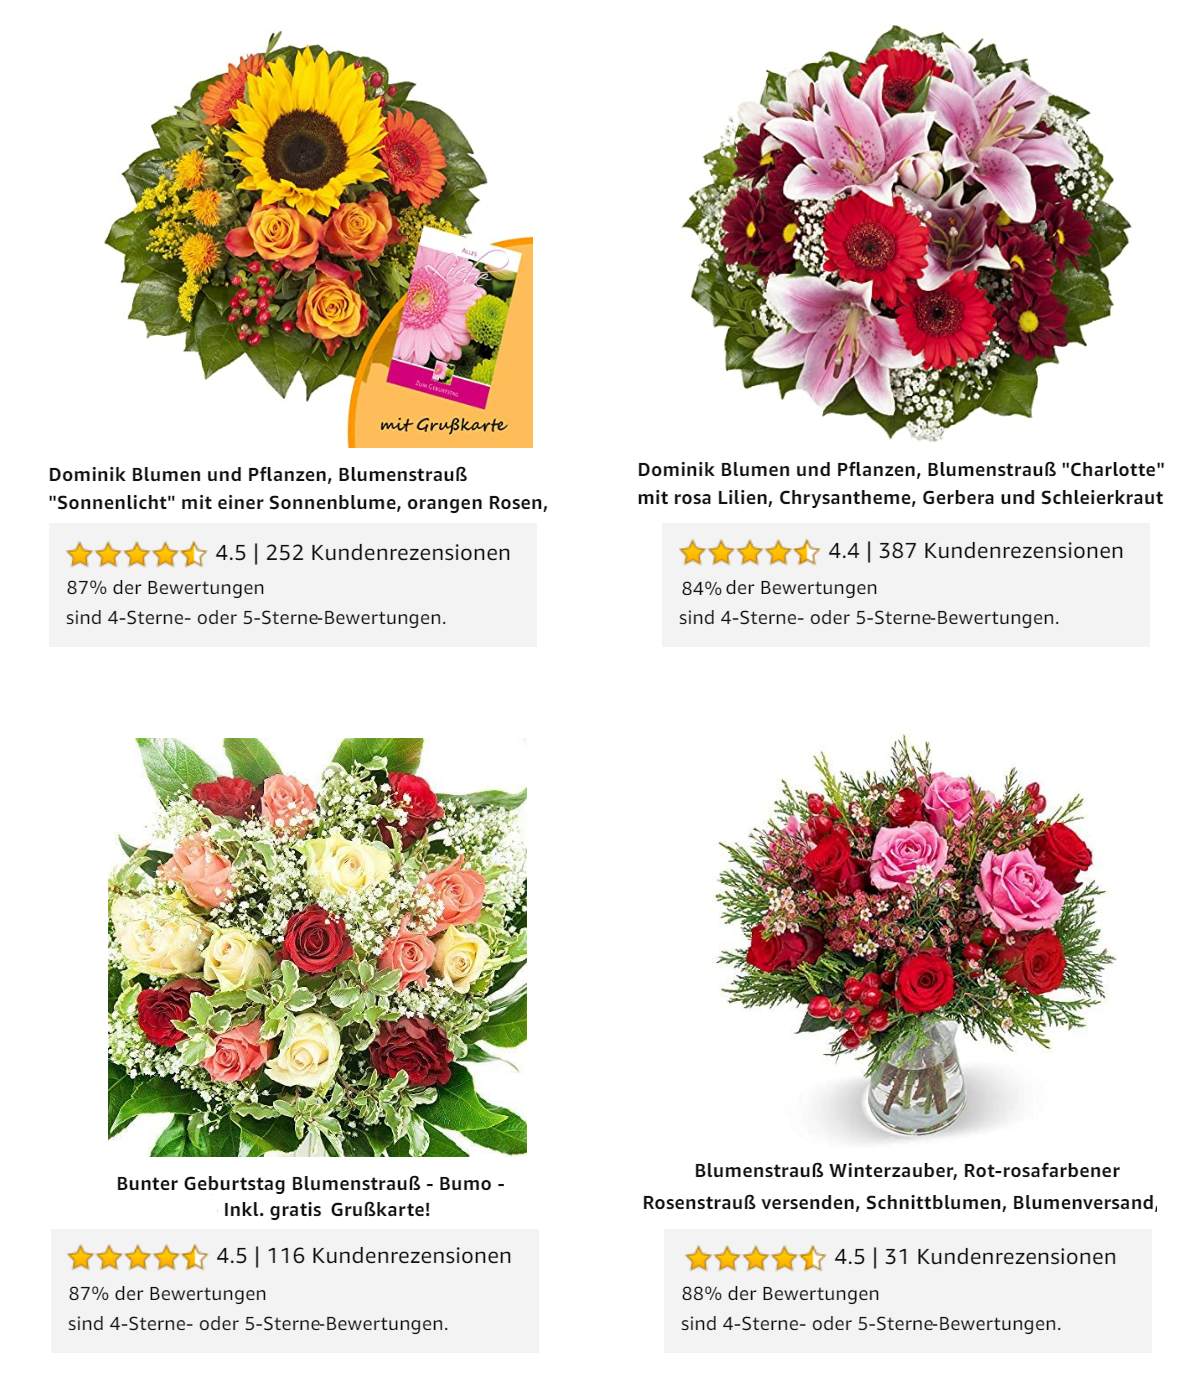 Die am besten bewerteten Blumensträuße vom Amazon Blumenversand